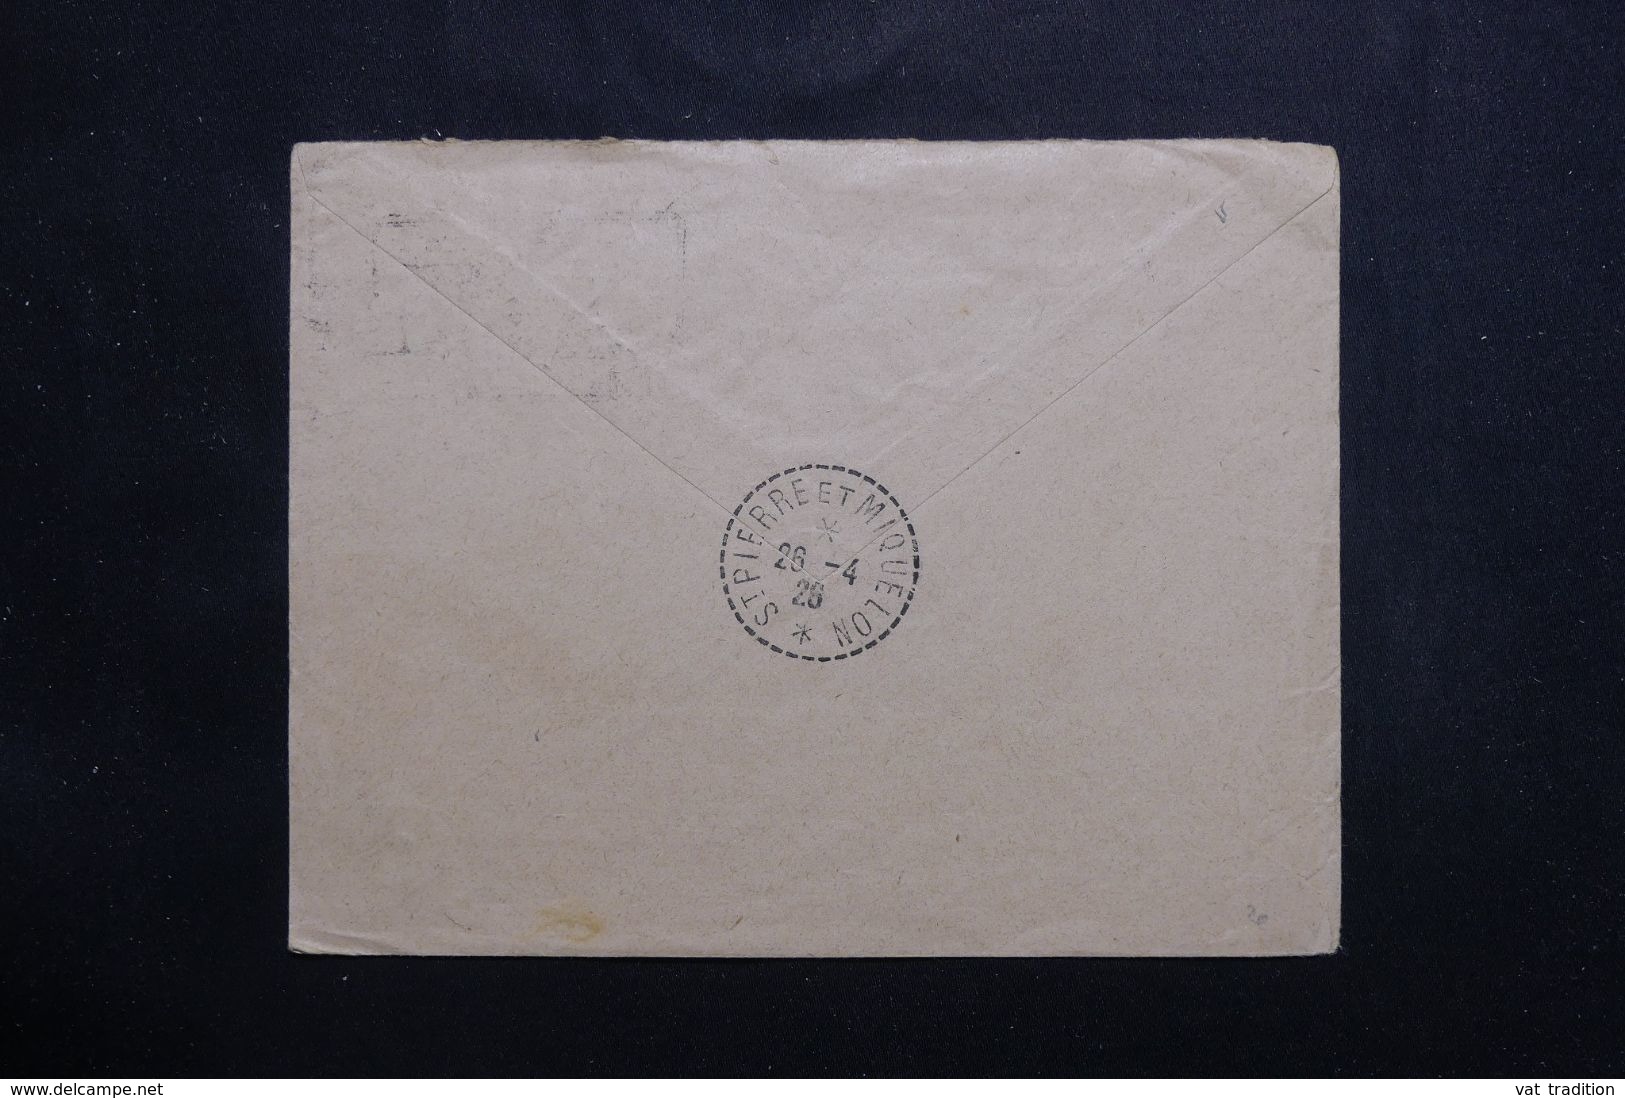 SAINT PIERRE ET MIQUELON - Enveloppe En PP 0.30 Pour Strasbourg En 1926 - L 65578 - Lettres & Documents